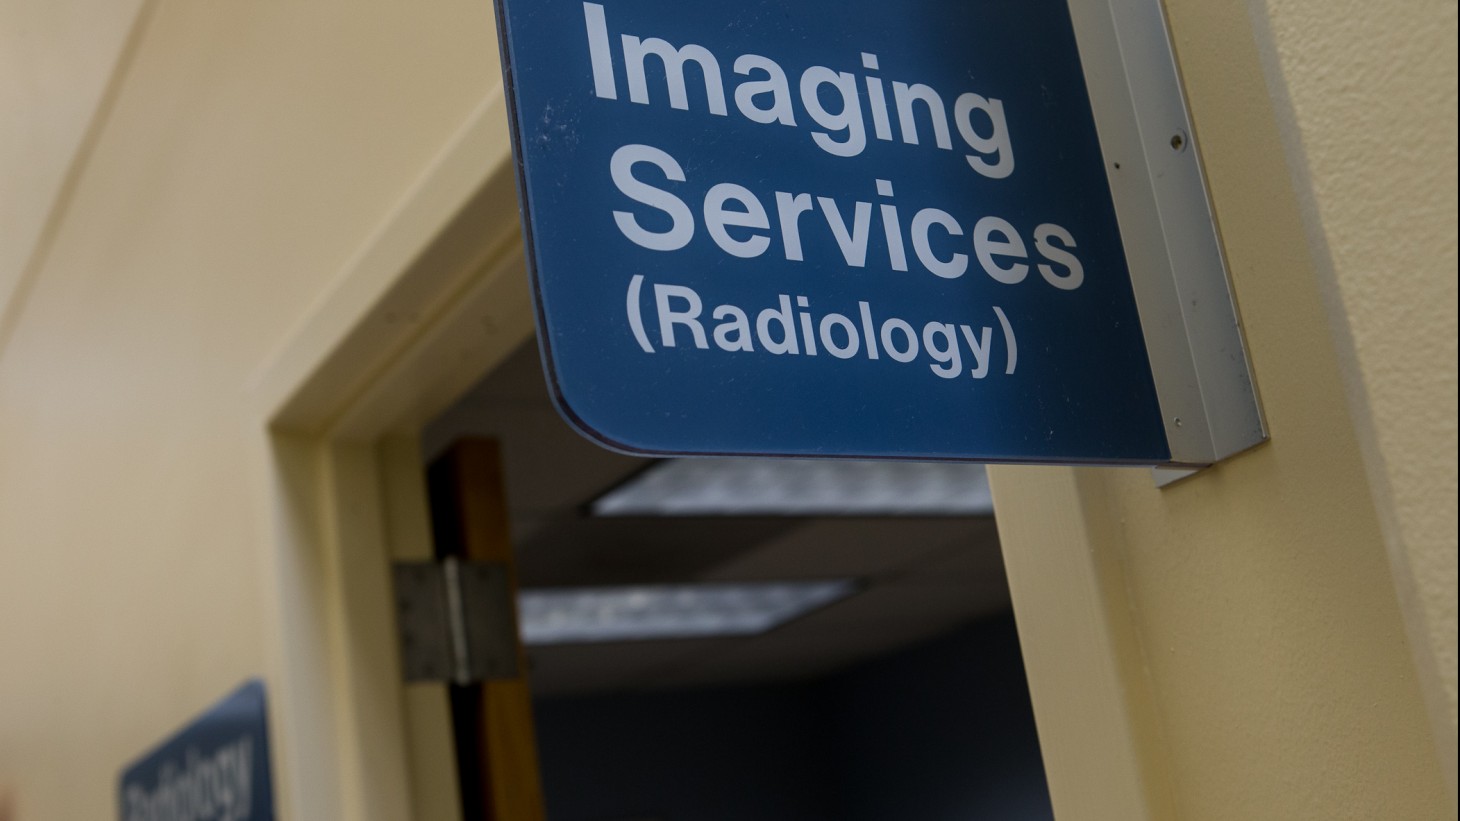 alt="Radiology sign"